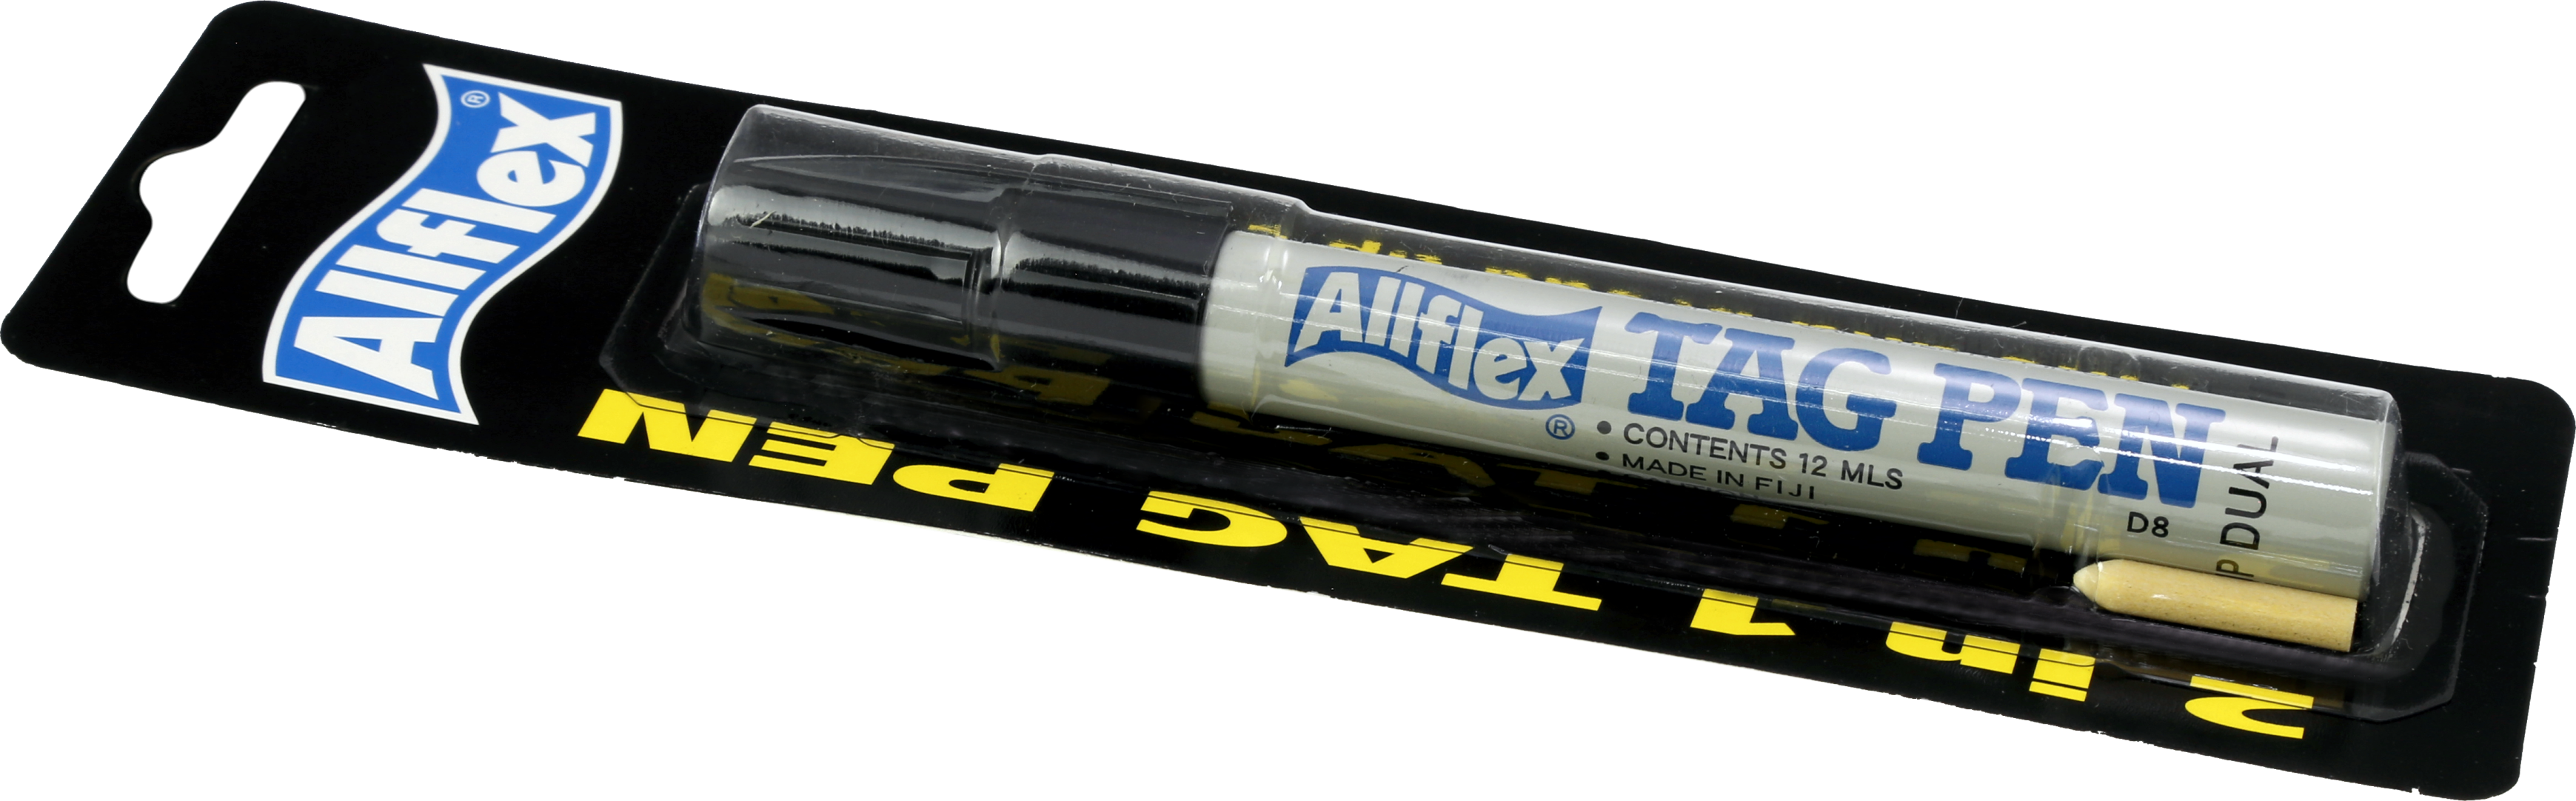 Tag pen Allflex